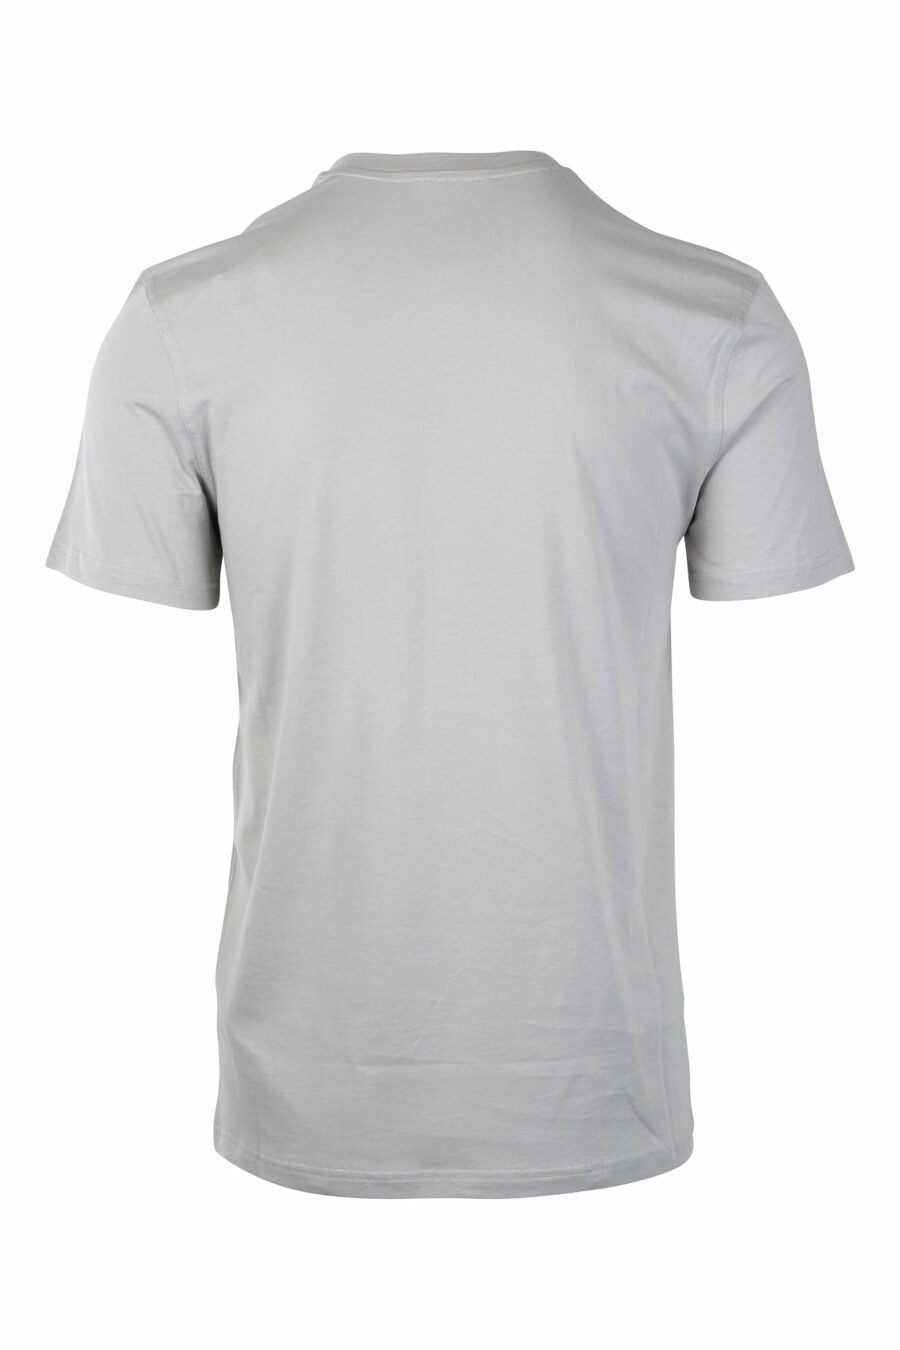 Camiseta gris con maxilogo oso monocromático - IMG 1399